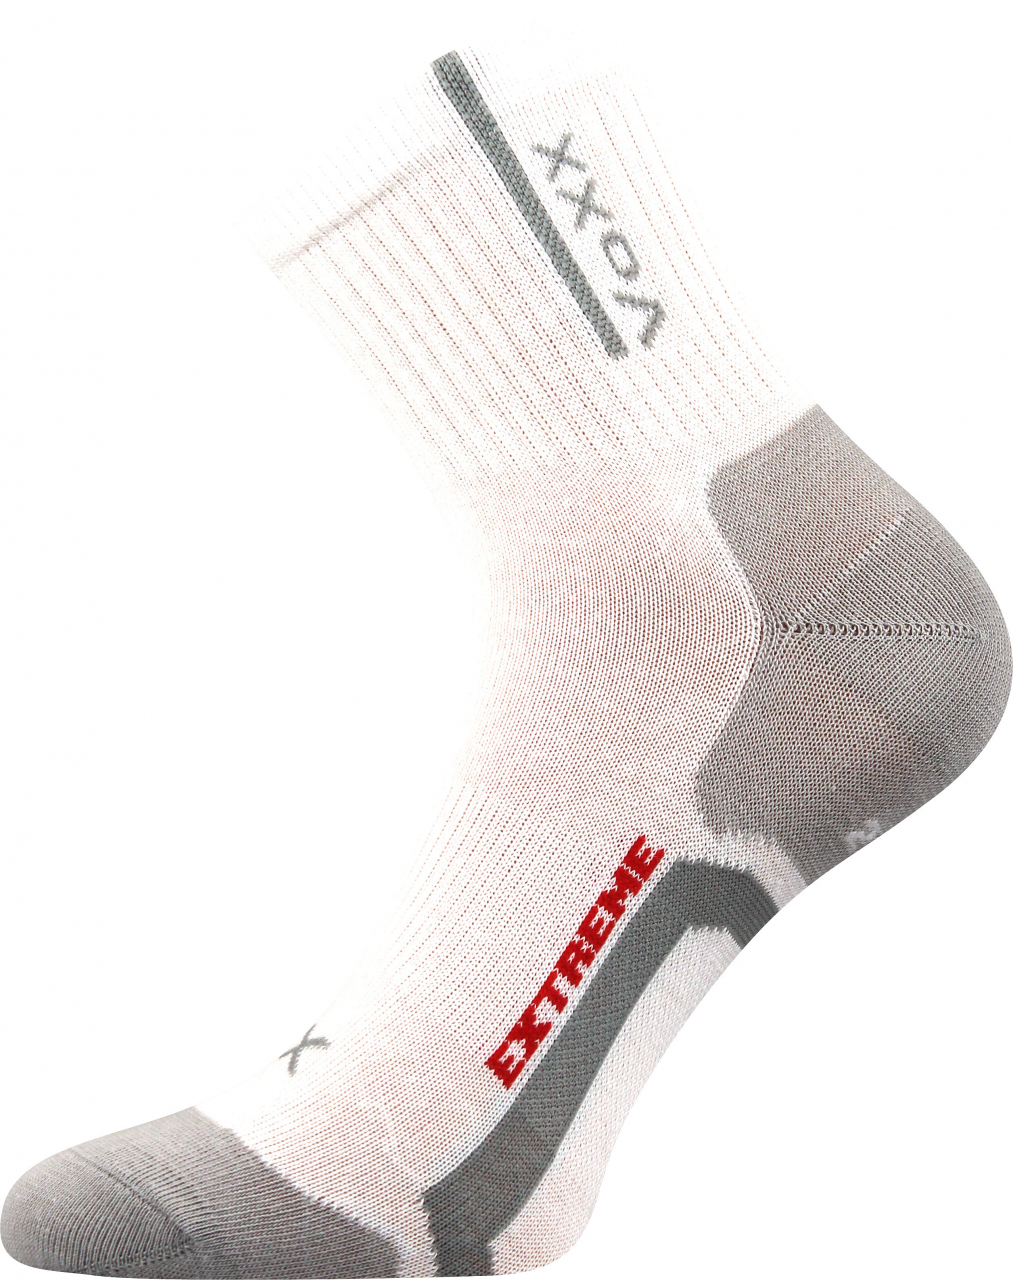 Ponožky antibakteriální Voxx Josef - bílé-šedé, 39-42